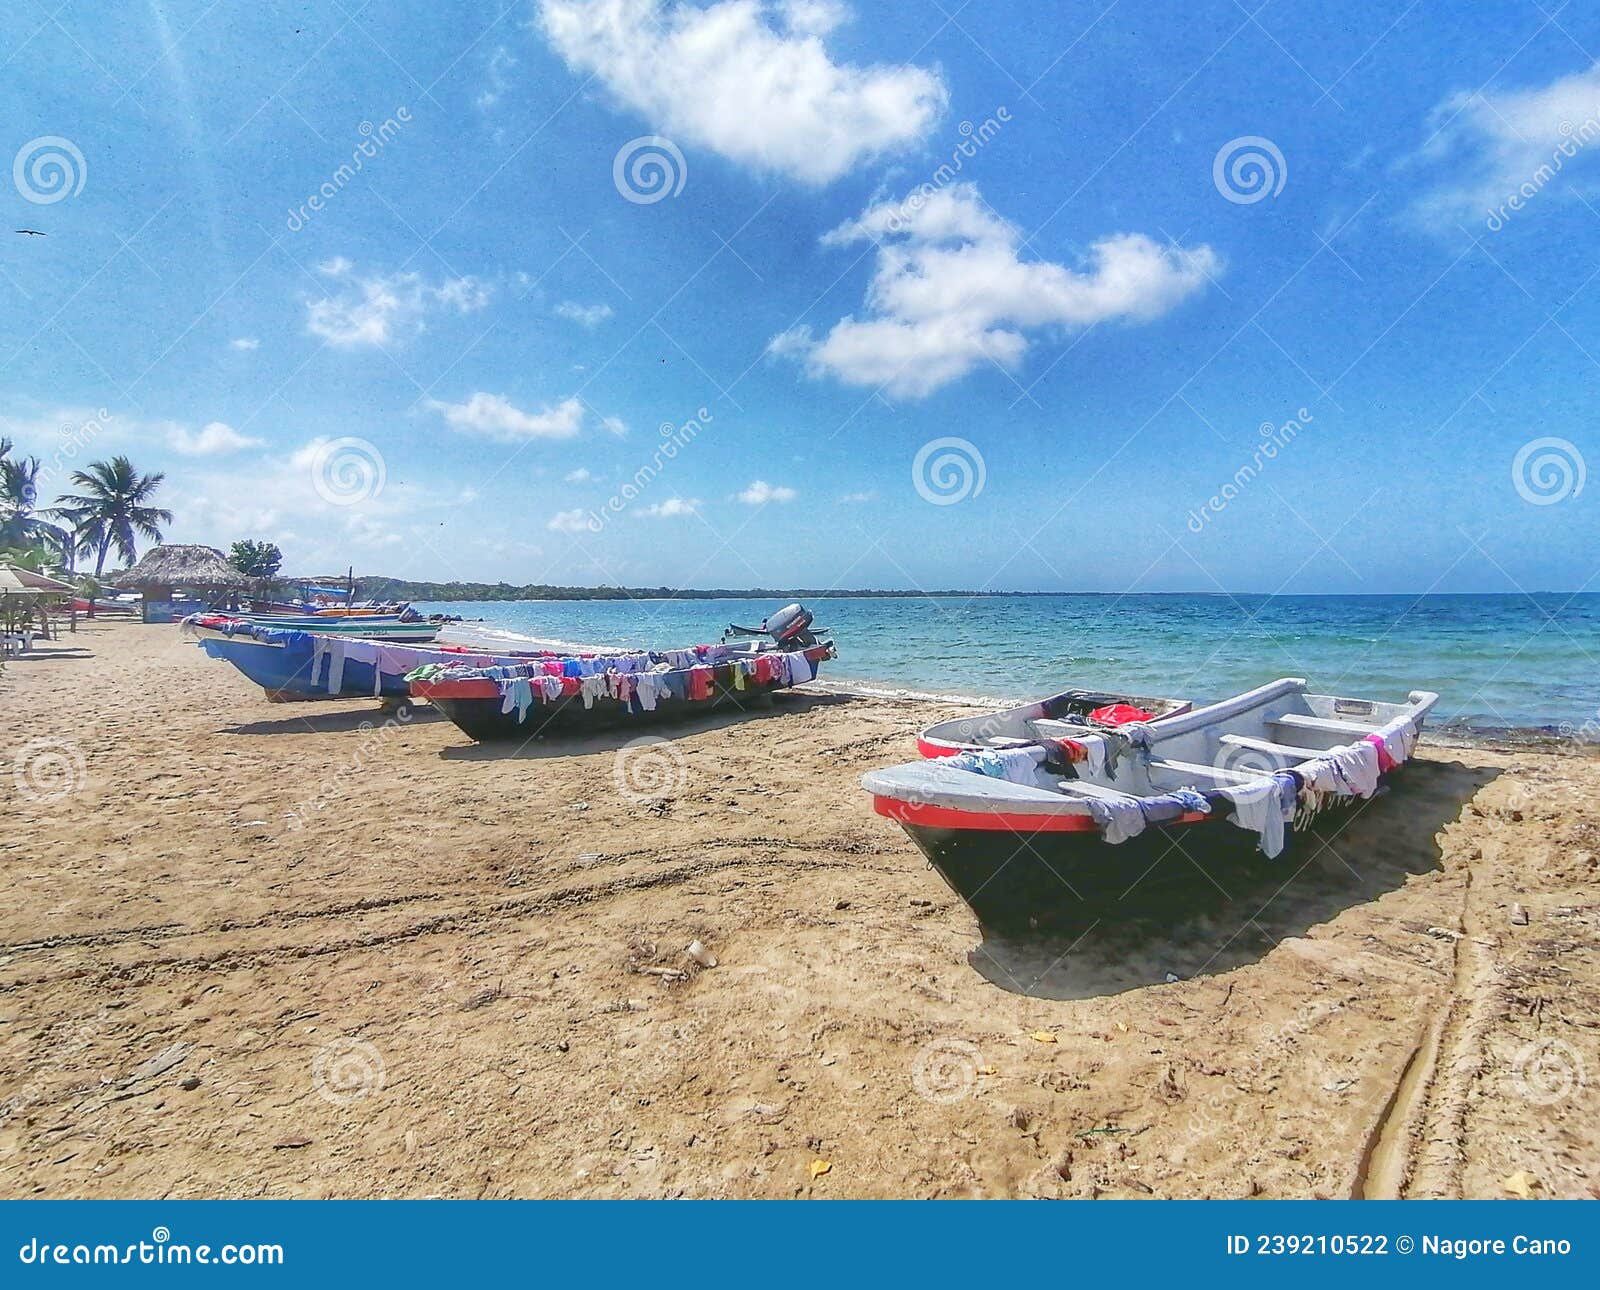 Secado De Ropa Al Aire Libre En Barcos En La Playa De Rincon Del